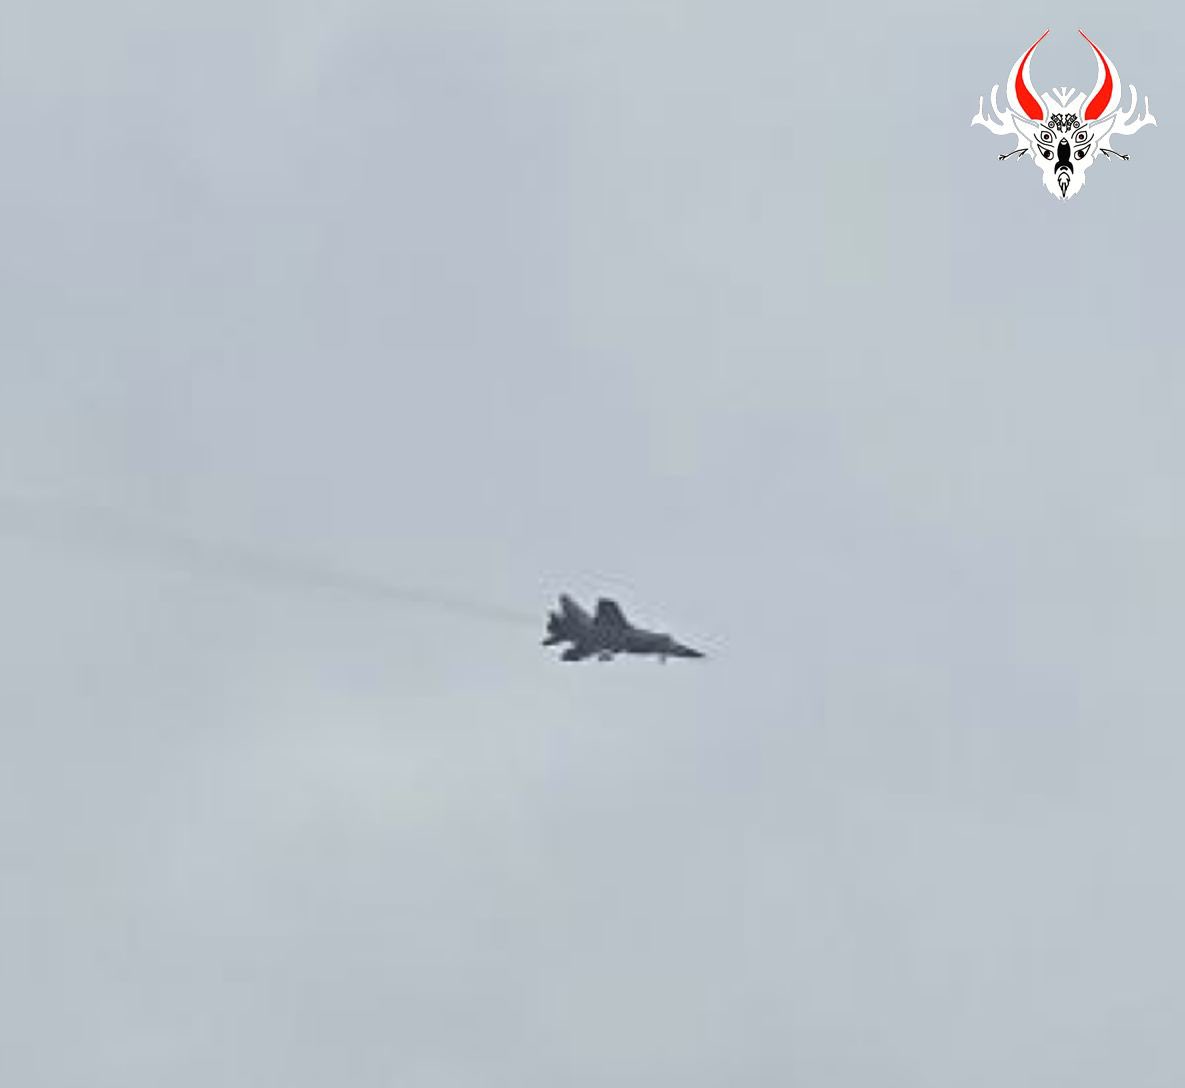 تم رصد 3-4 مقاتلات من طراز MiG-31 (فارغة بدون صواريخ) فوق مينسك في الدقائق الثلاثين الماضية